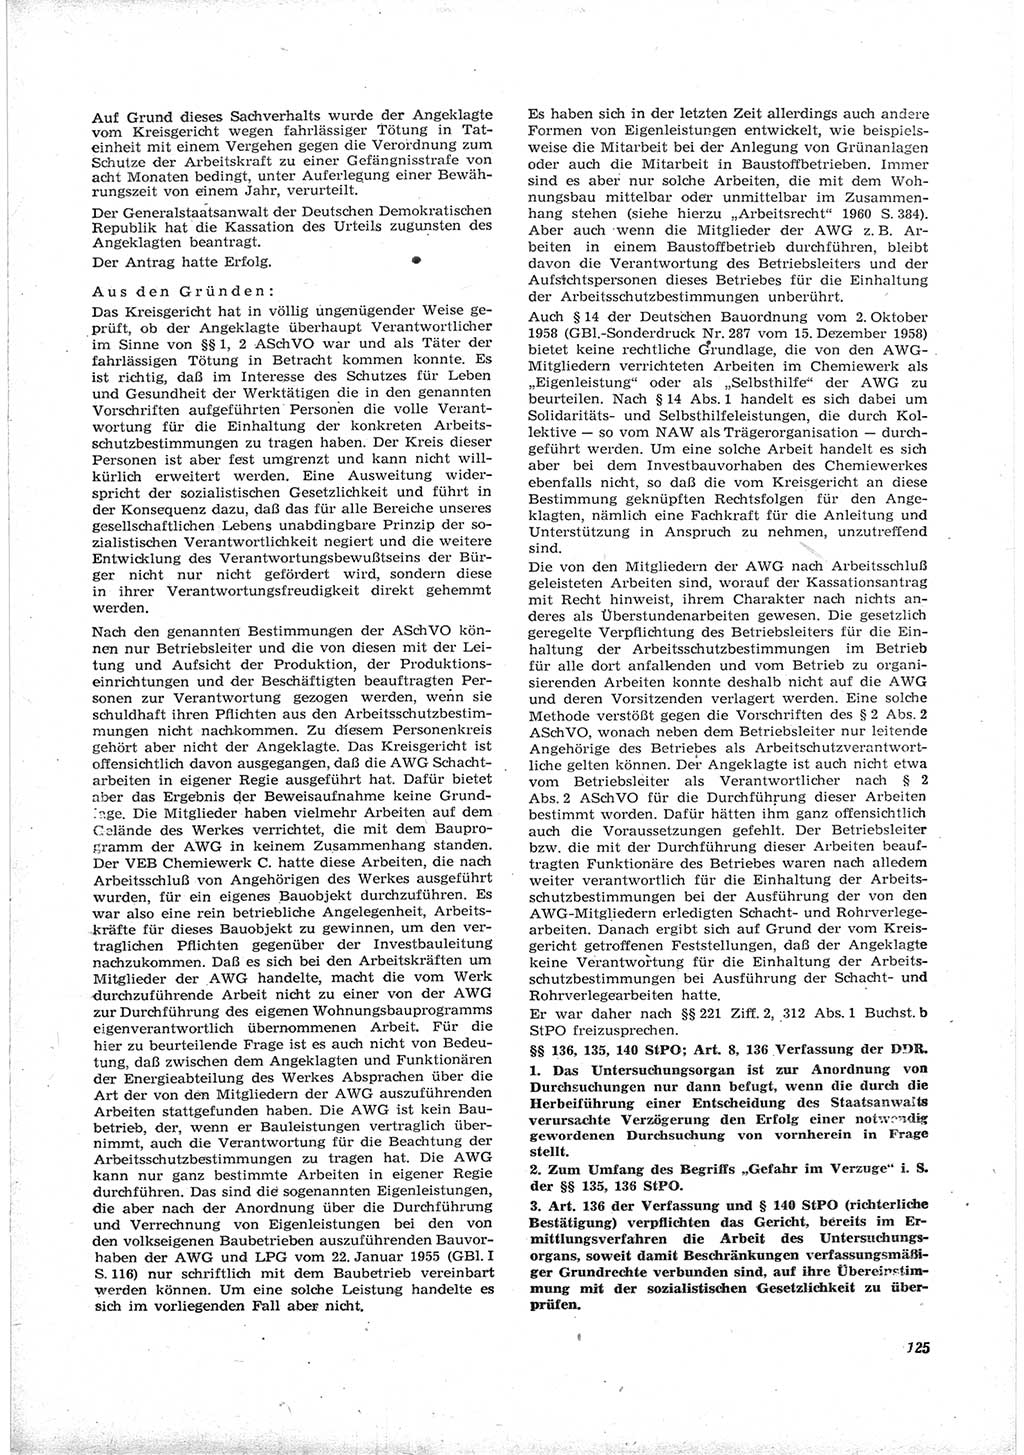 Neue Justiz (NJ), Zeitschrift für Recht und Rechtswissenschaft [Deutsche Demokratische Republik (DDR)], 17. Jahrgang 1963, Seite 125 (NJ DDR 1963, S. 125)